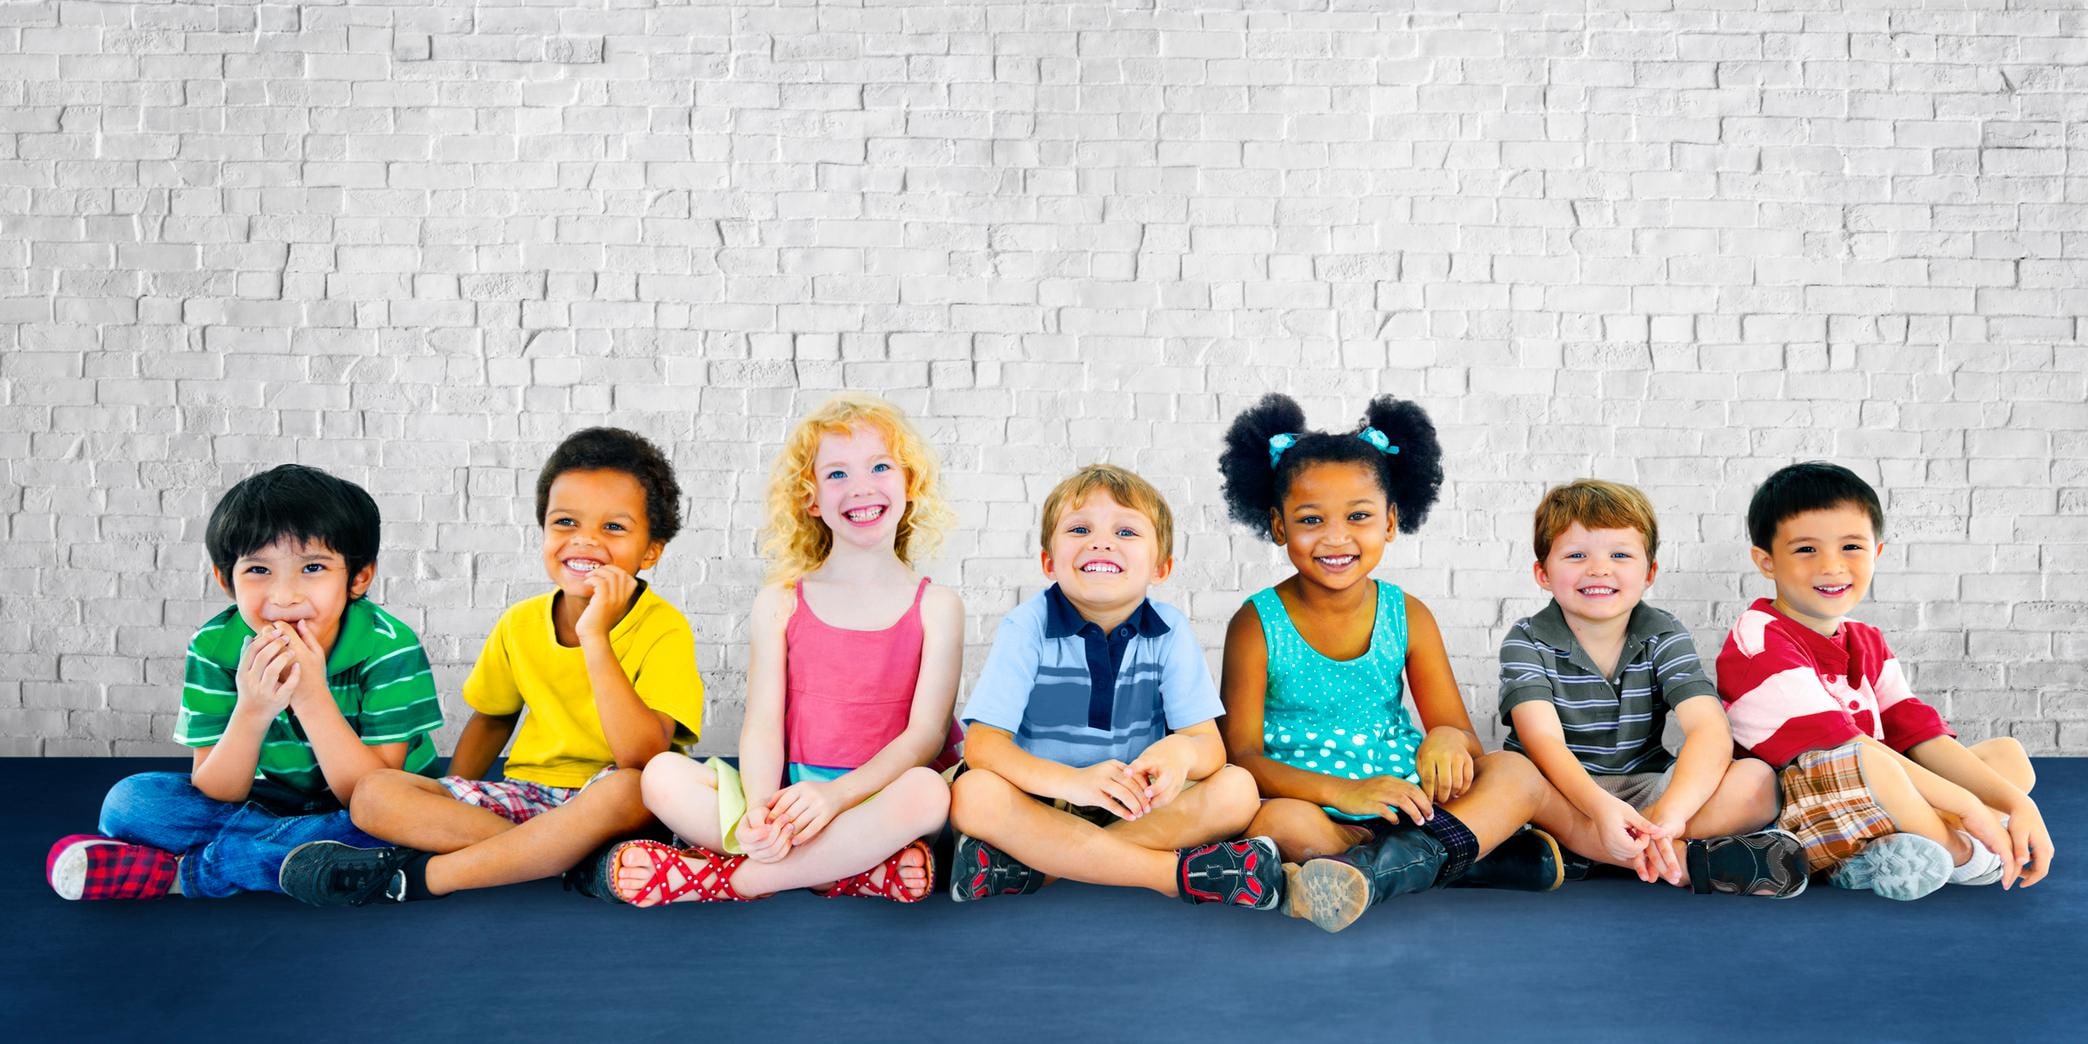 Zijn kinderen bezig met rassenverschil?